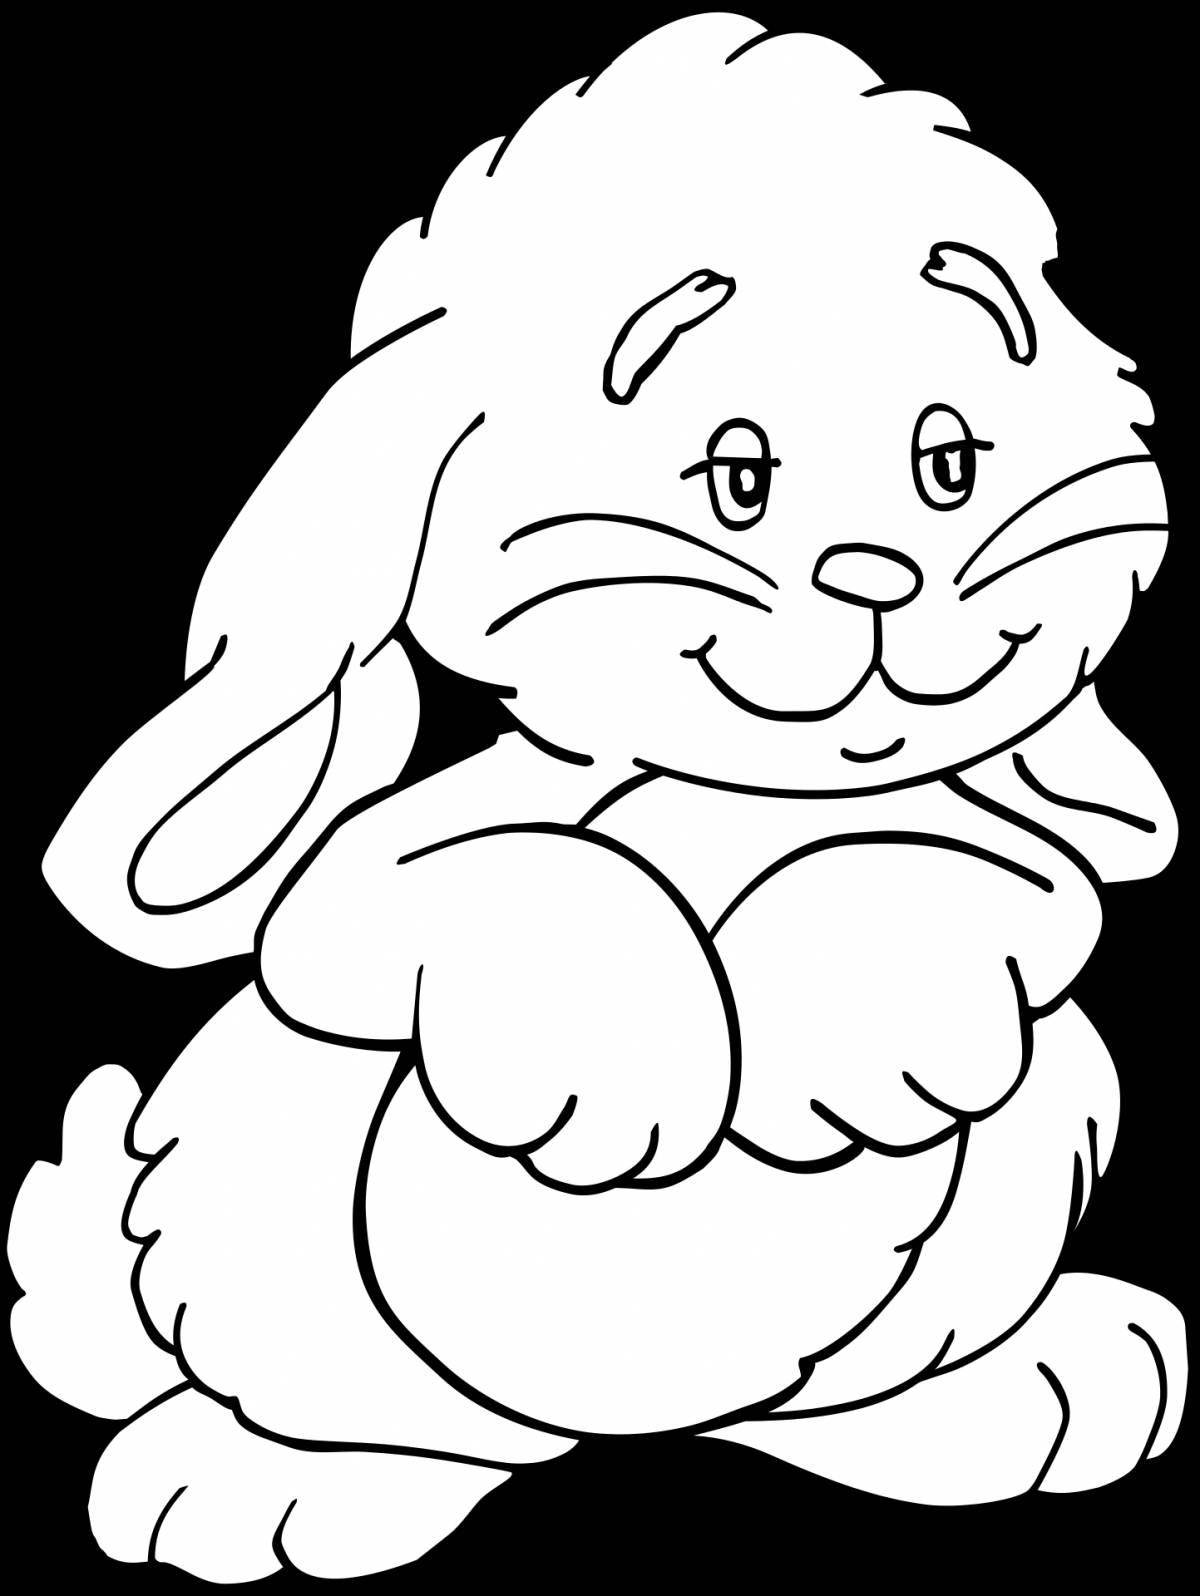 Раскраска пушистый ангорский кролик